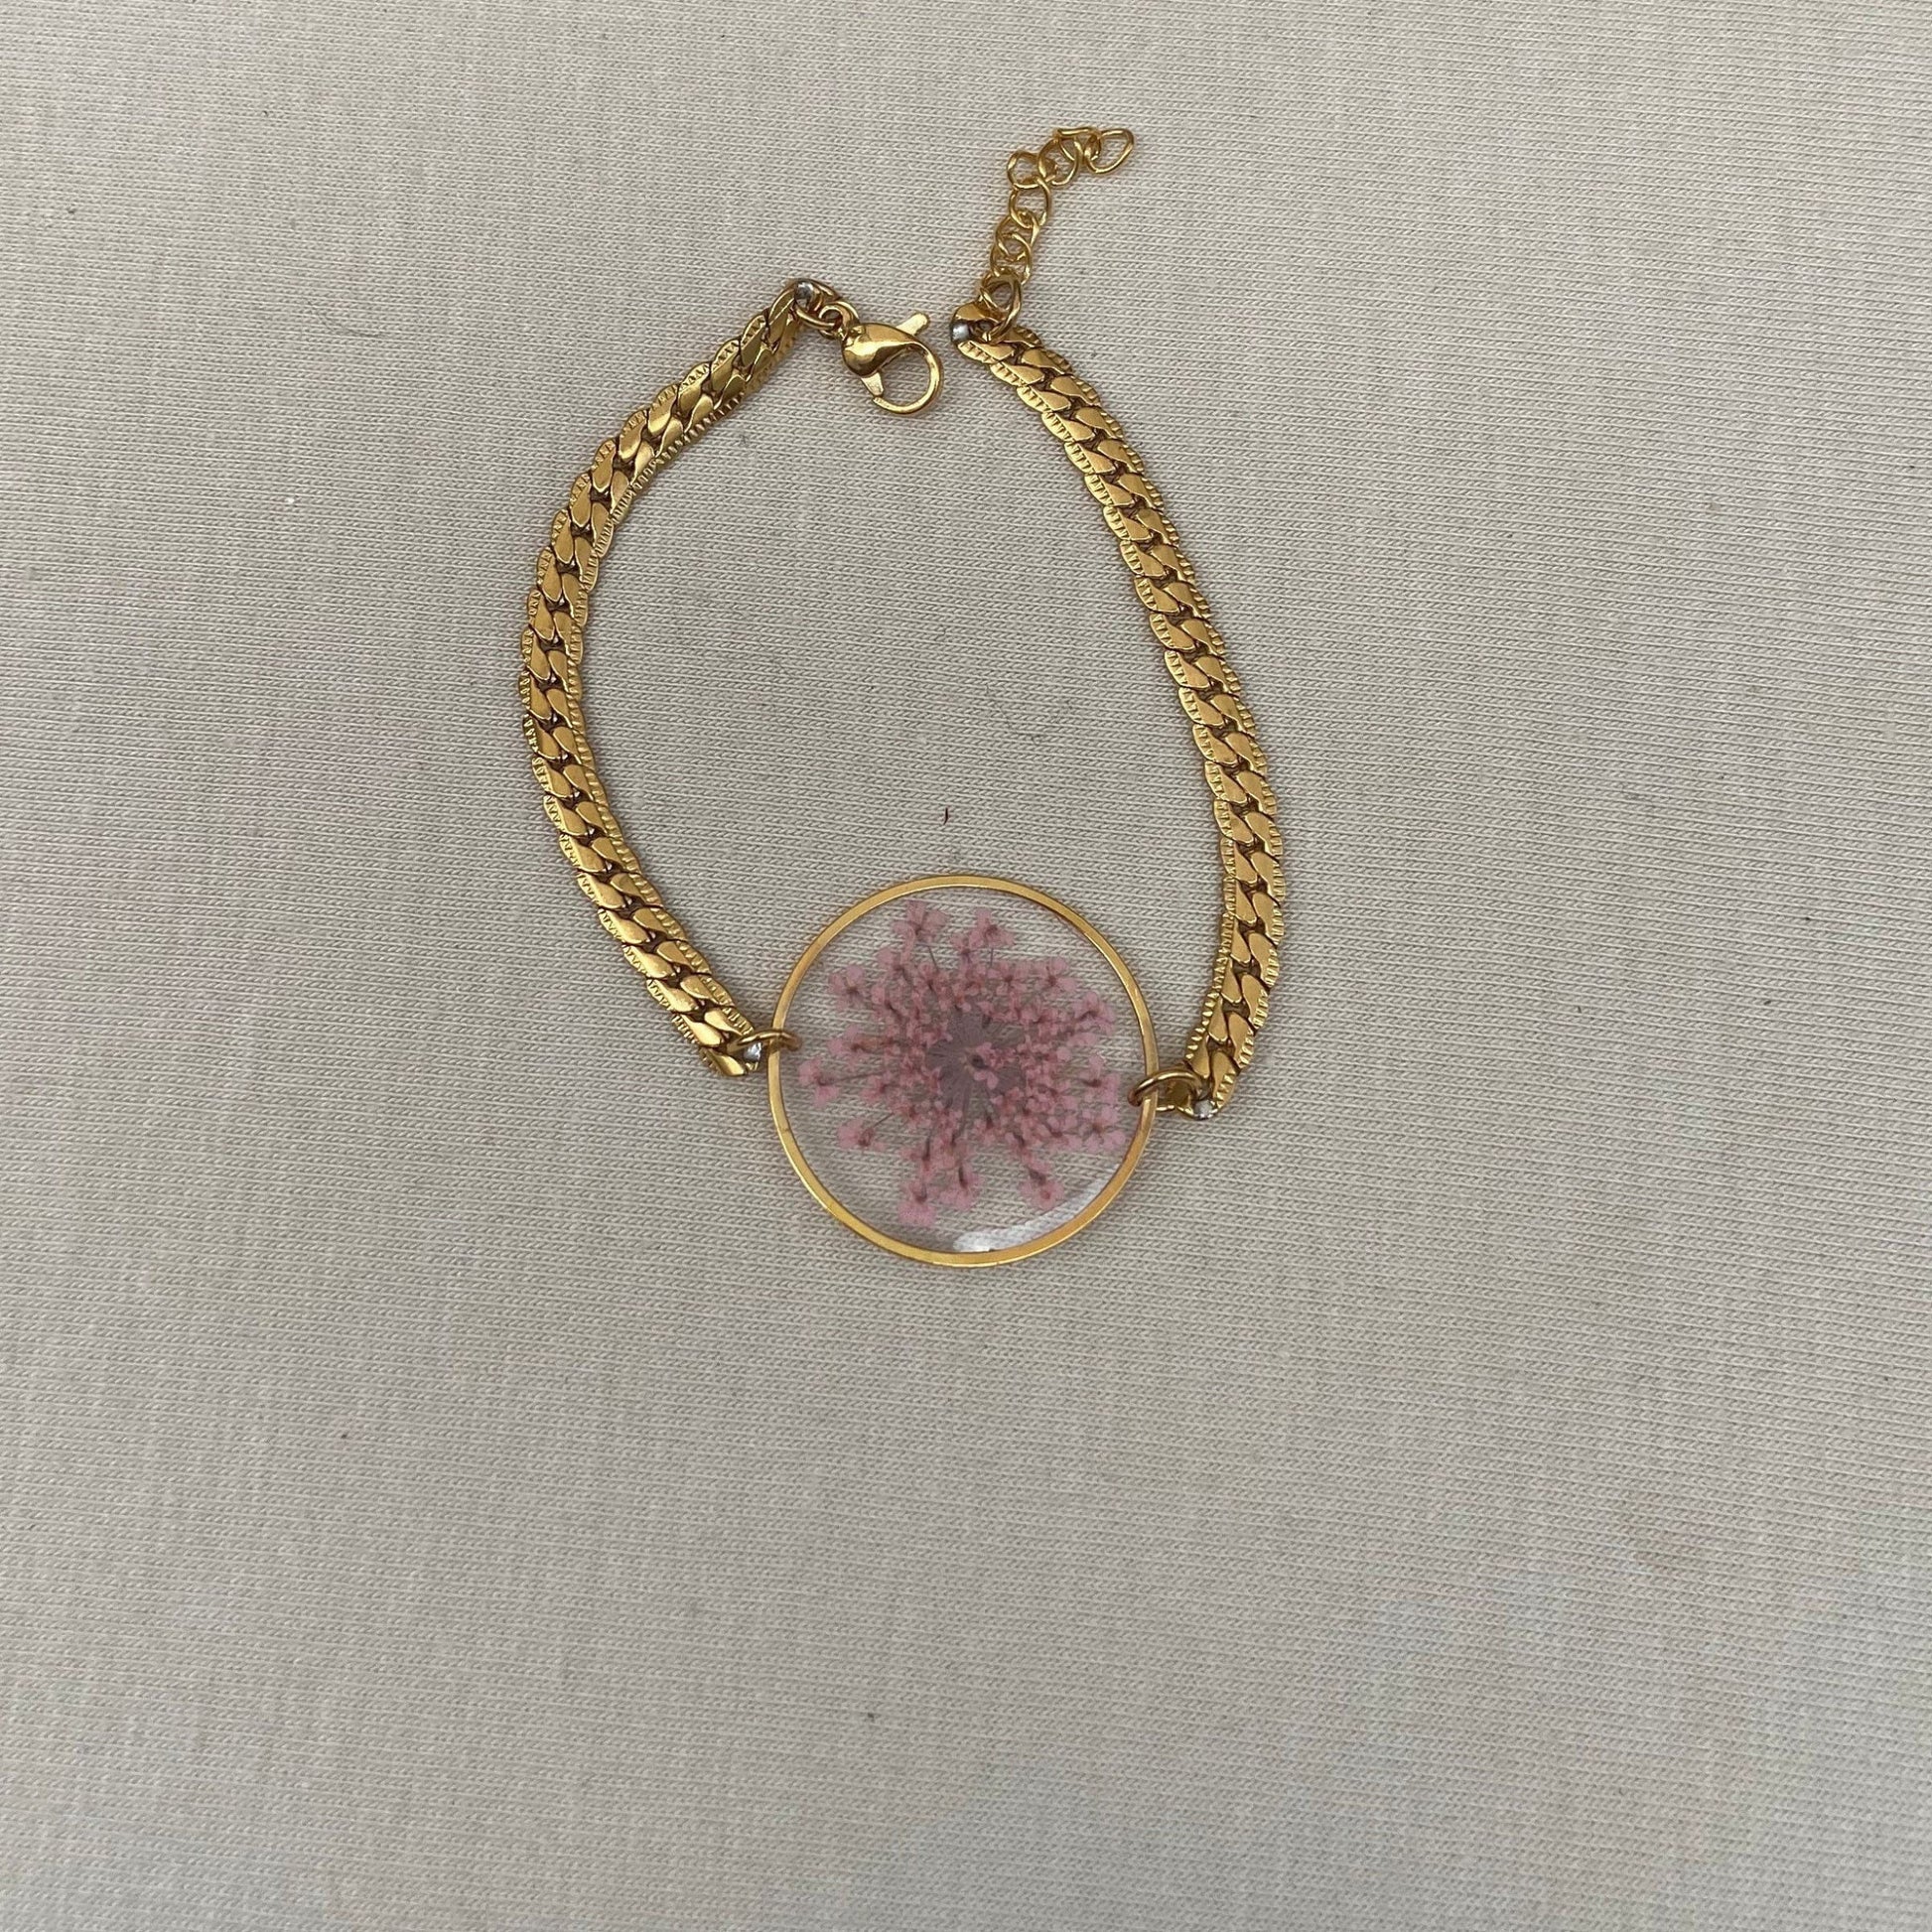 Bracelet argent inclusion de la fleur dentelle de la Reine Anne séchée rouge cadeau de Fête des Mères pour elle - Lorred